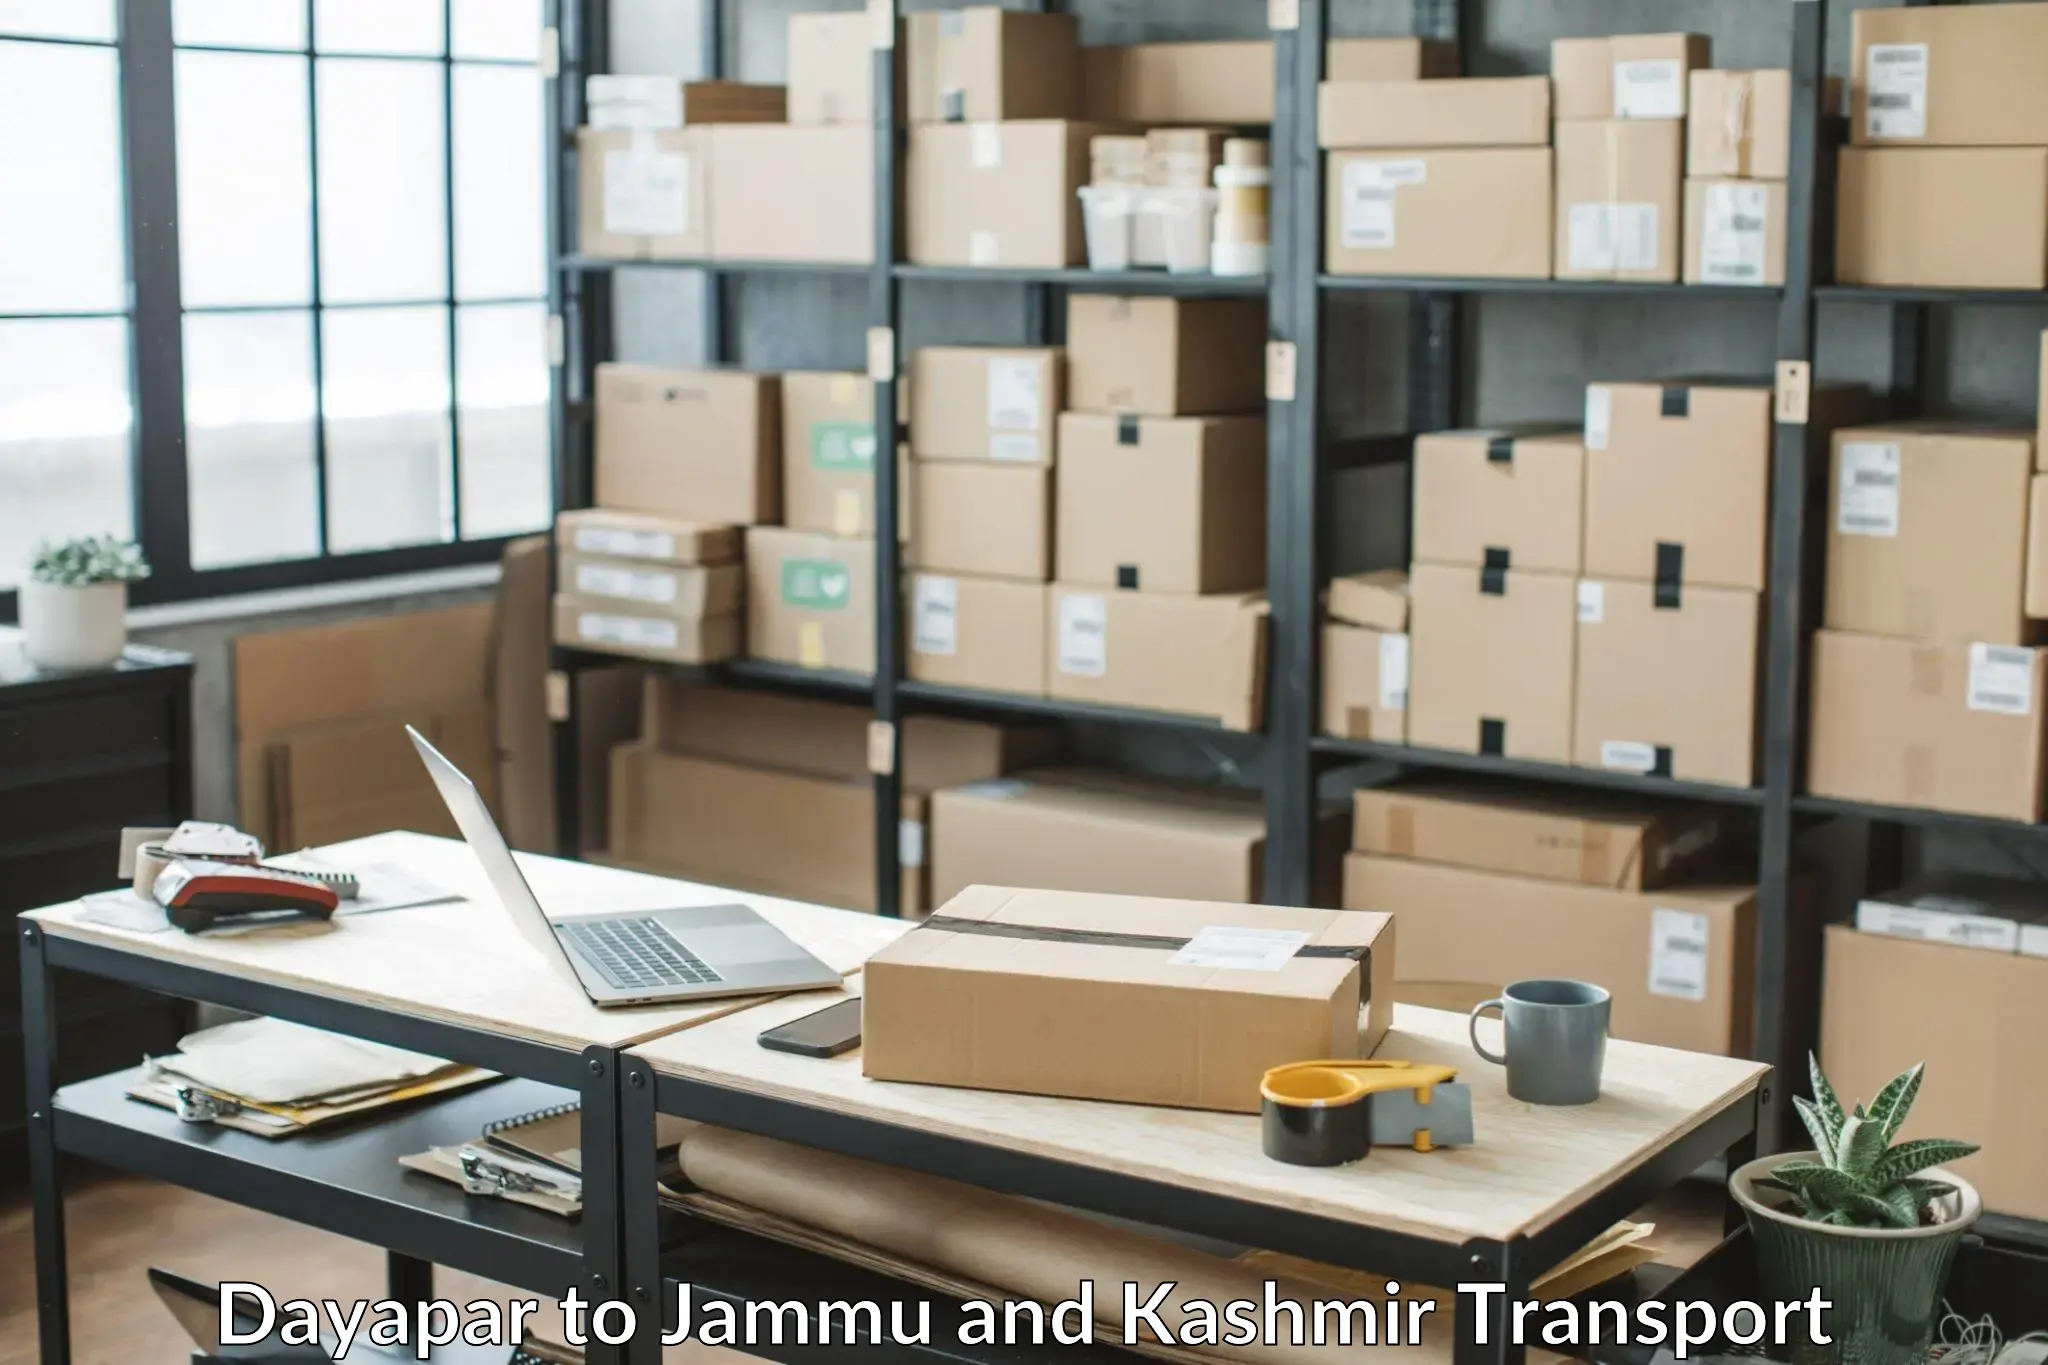 Air cargo transport services Dayapar to Jammu and Kashmir